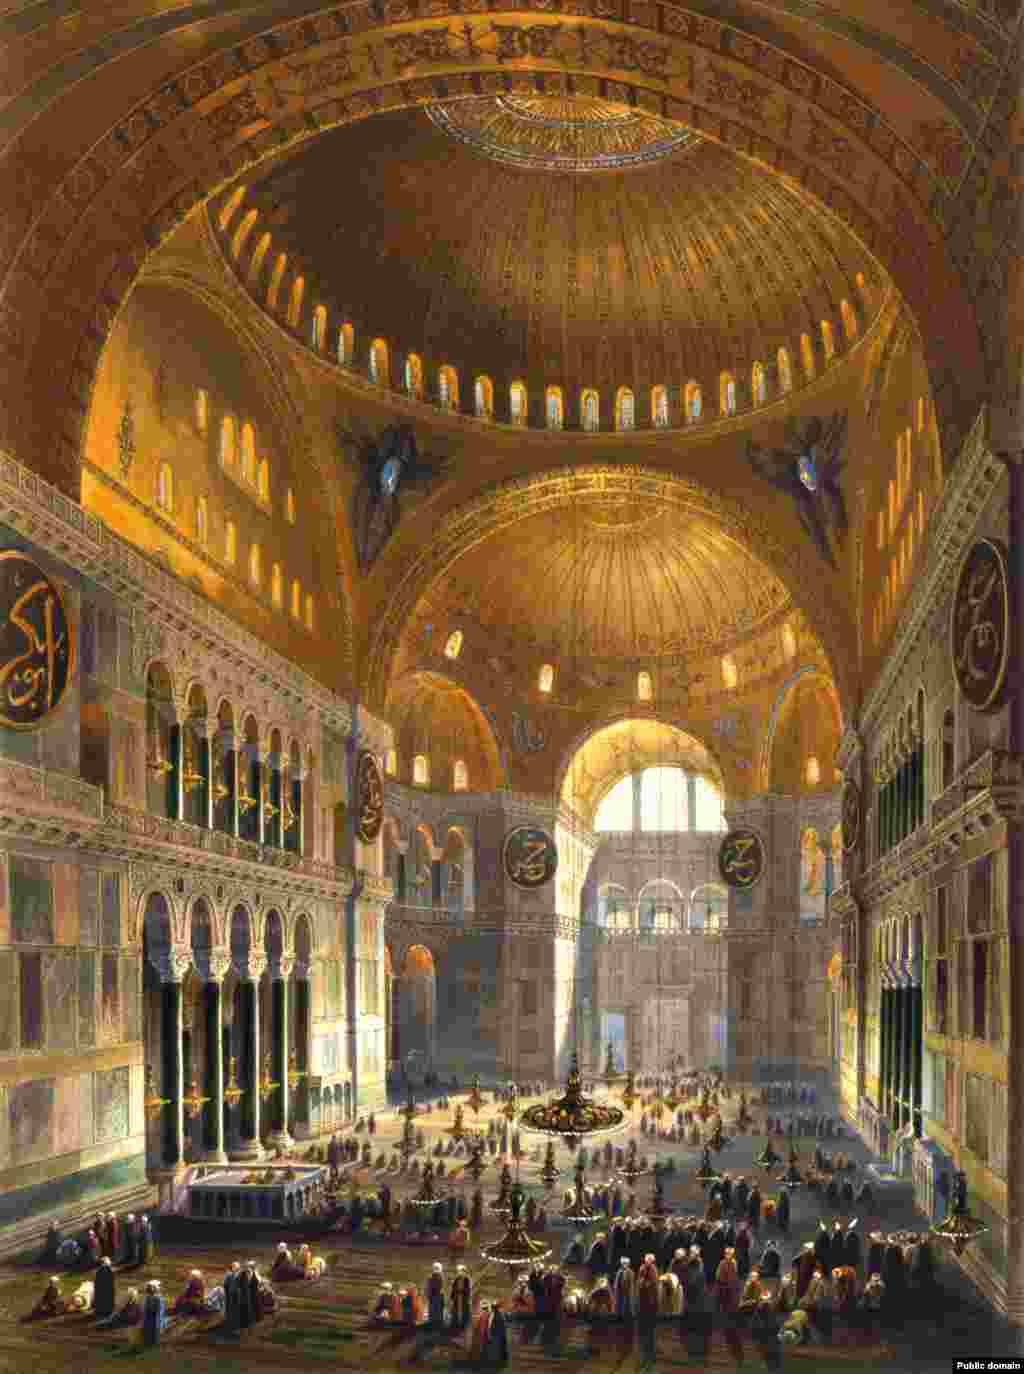 Илустрација од 1852 година на муслимани кои се молеле во Агиа Софија кога била џамија. Скоро 500 години, Аја Софија била џамија, а христијанската иконографија внатре била малтерисана или уништена.